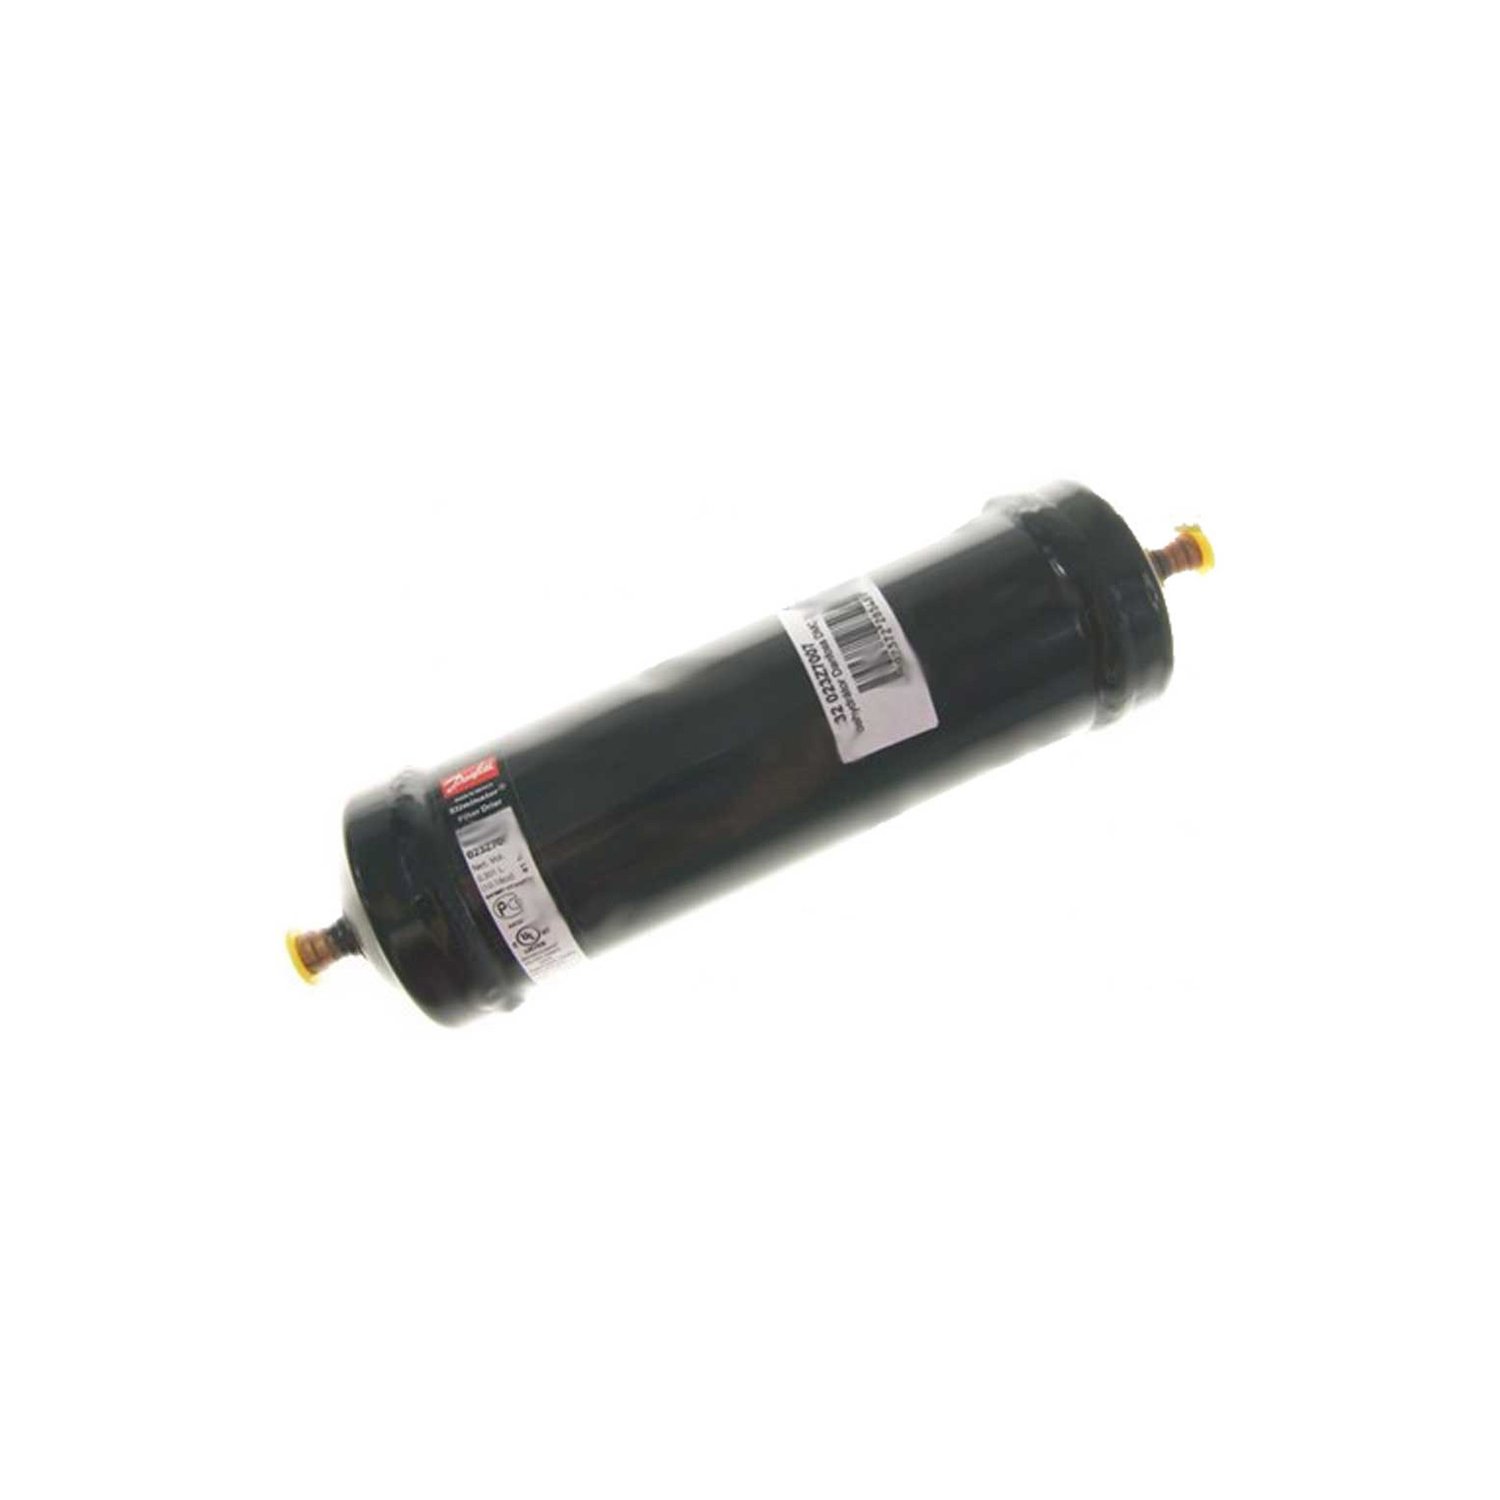 Filtertrockner 400g Anschlussgewinde 3/8 F/M 203mm Vergleichs-Nr